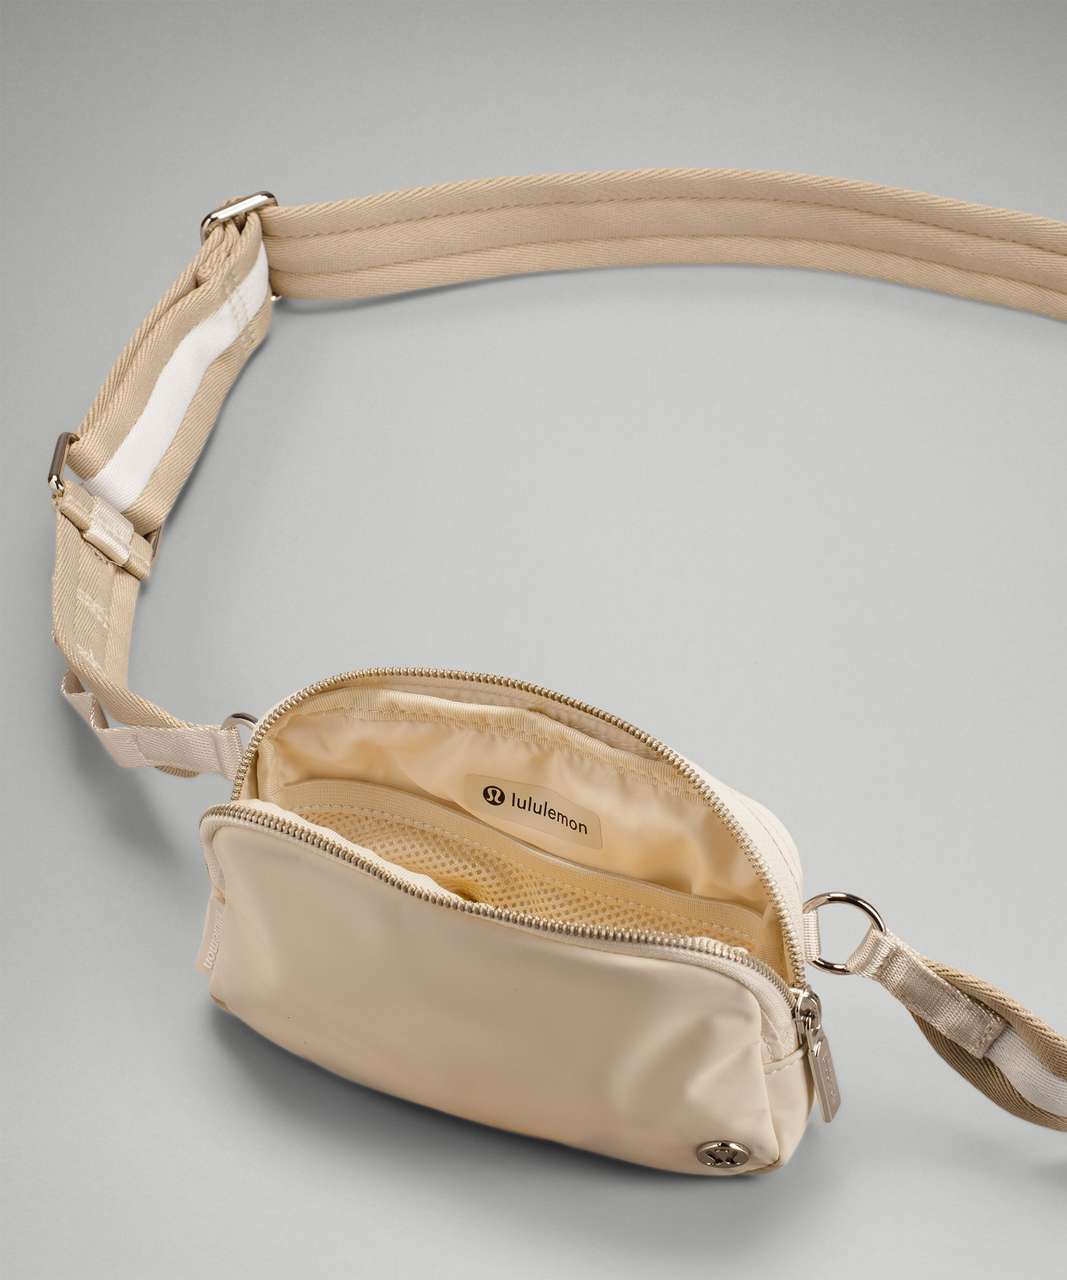 Wmtm Chambray Aligns (6) White Opal Belt Bag OOTD! : r/lululemon